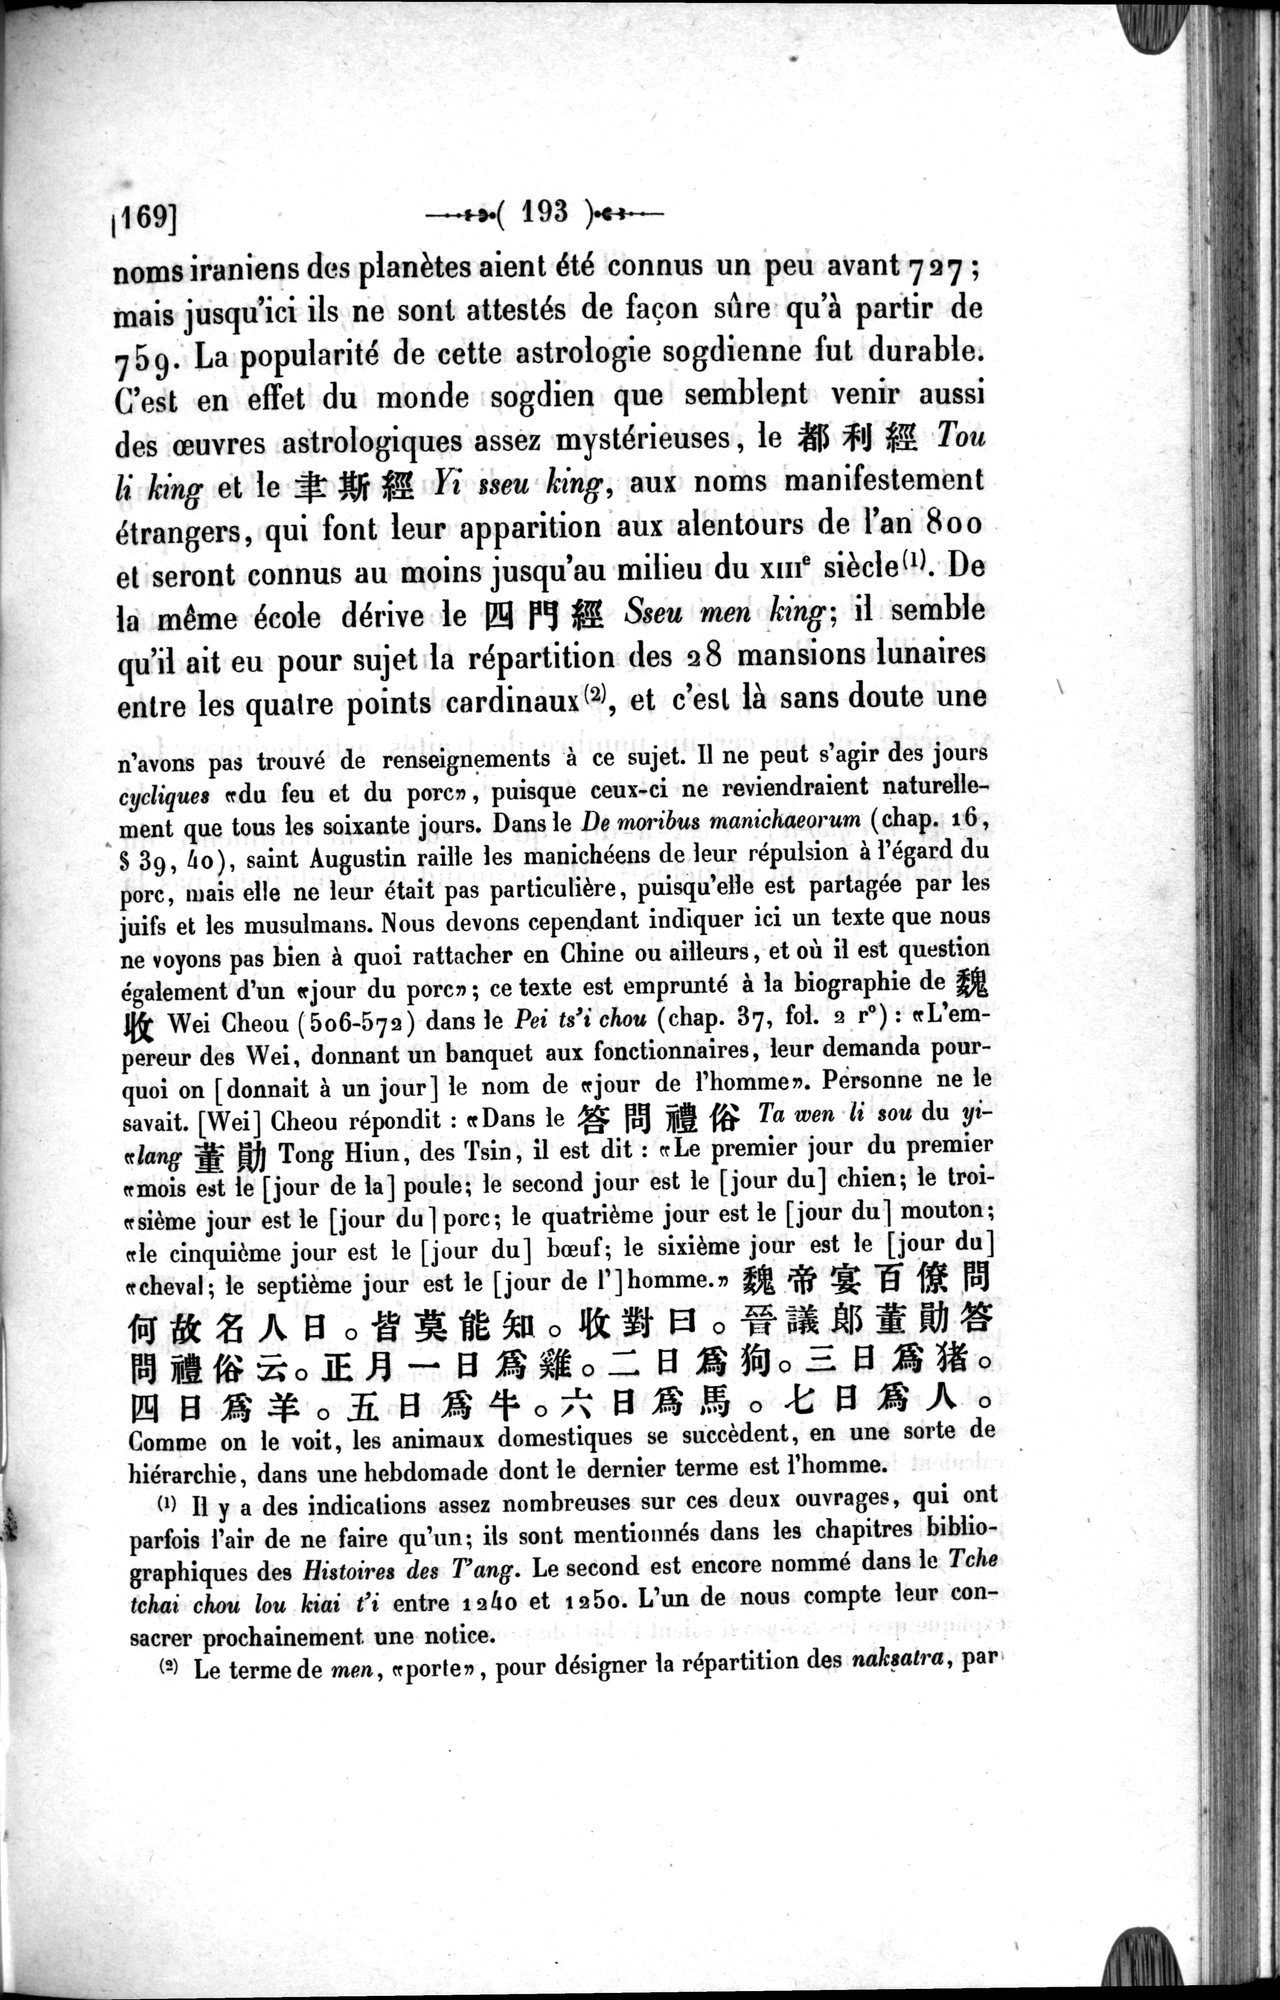 Un traité manichéen retrouvé en Chine : vol.1 / Page 203 (Grayscale High Resolution Image)